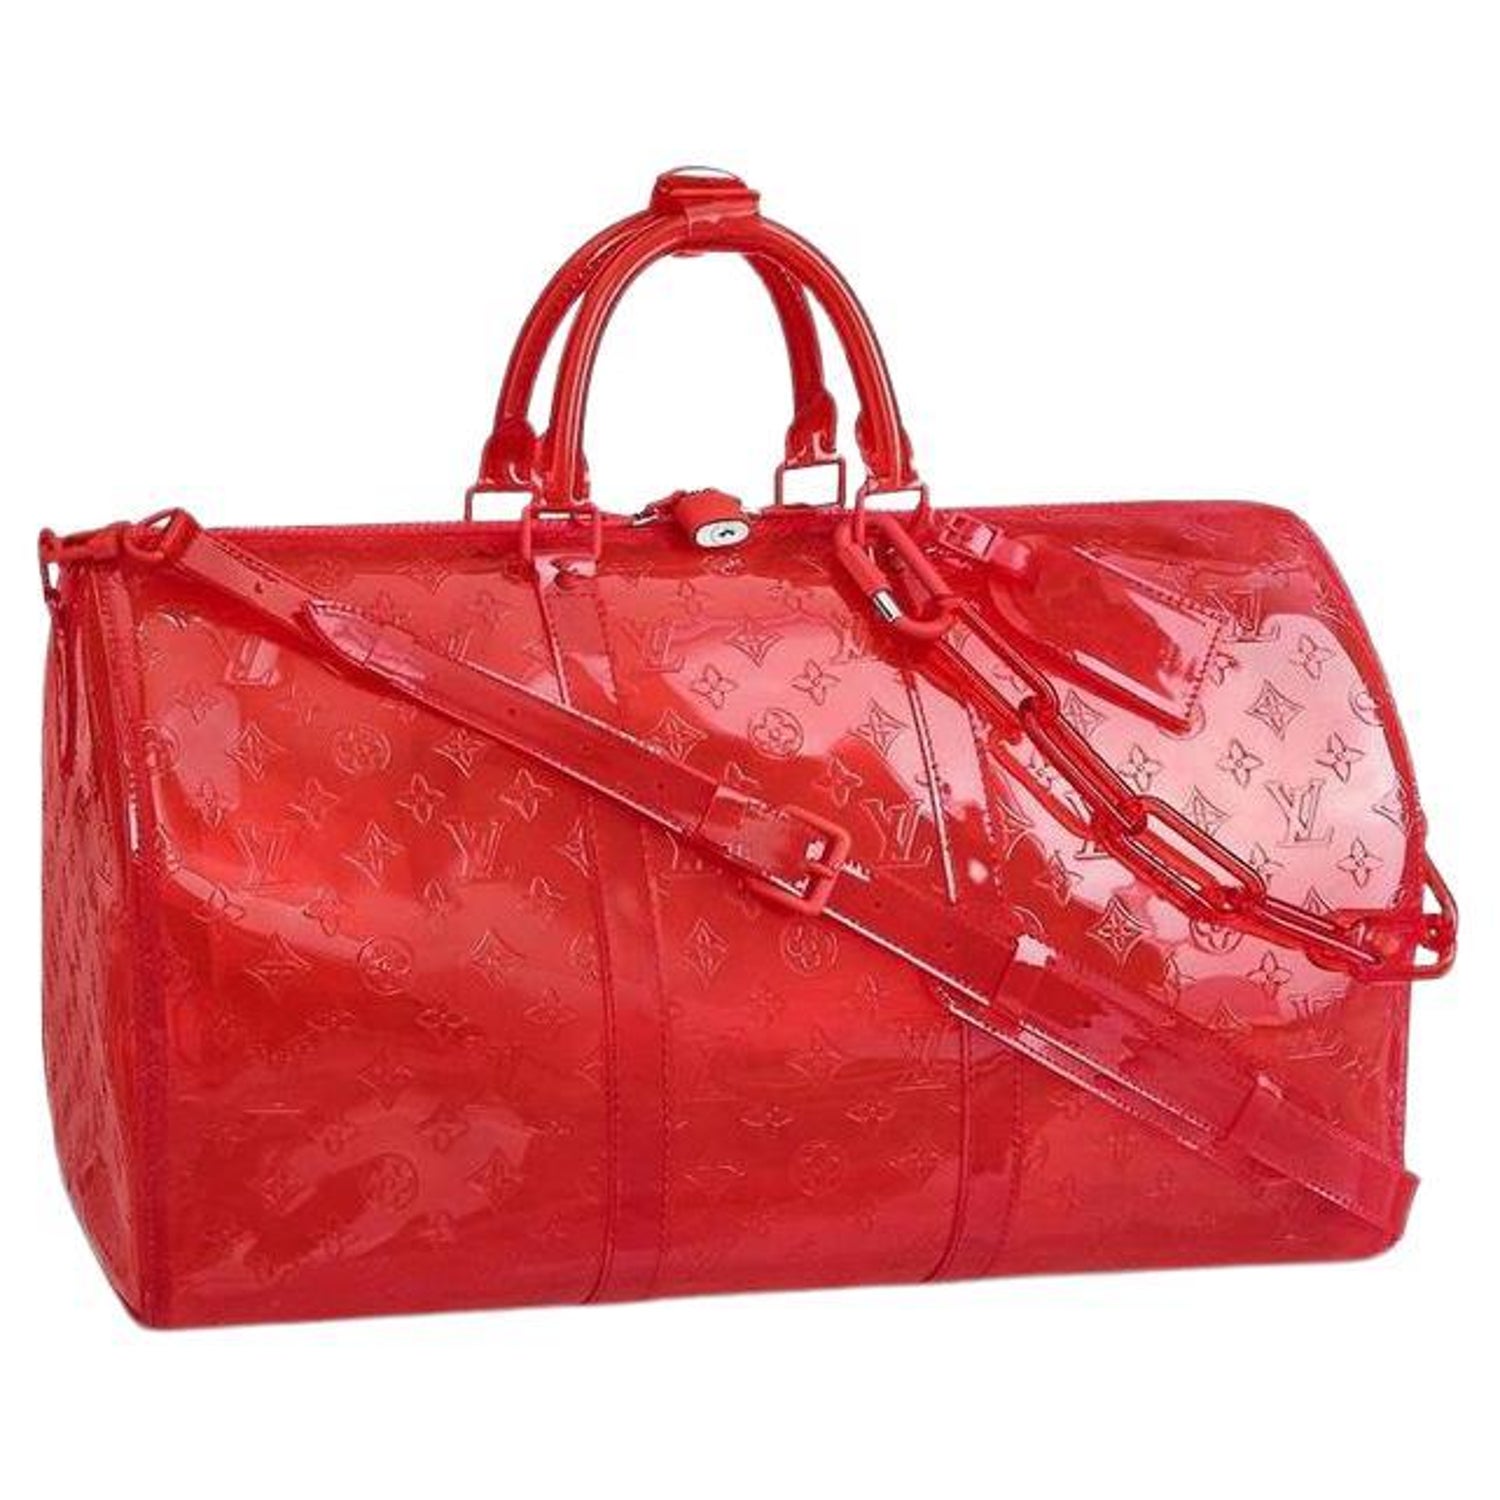 Louis Vuitton Design Transparent Bag  Cheap louis vuitton handbags, Louis  vuitton, Louis vuitton handbags